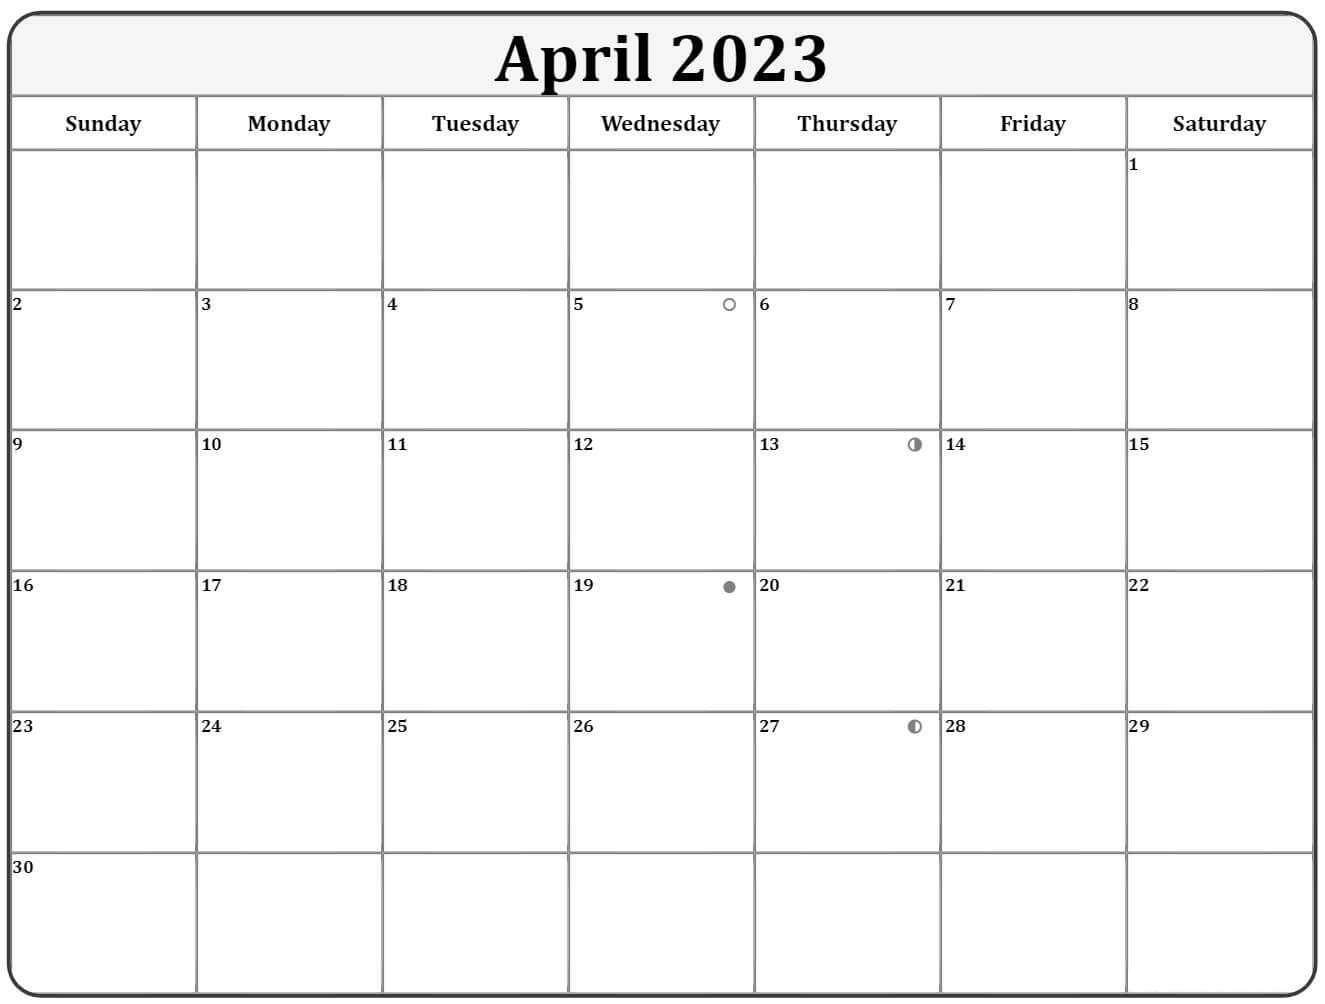 April 2023 calendar moon